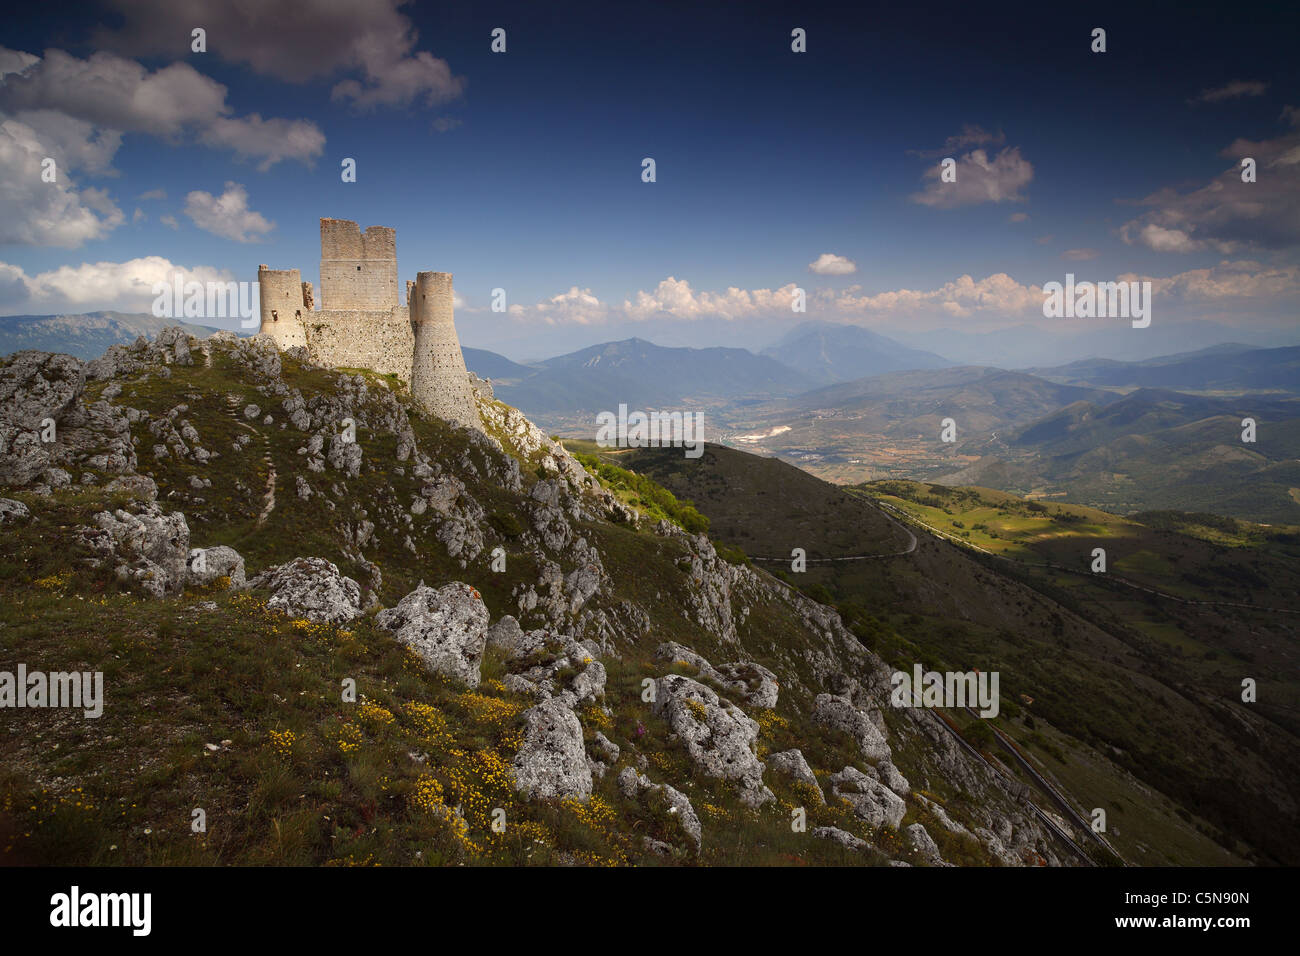 The castle at Rocca Calascio in the Gran Sasso national park in Abruzzo Italy. Stock Photo